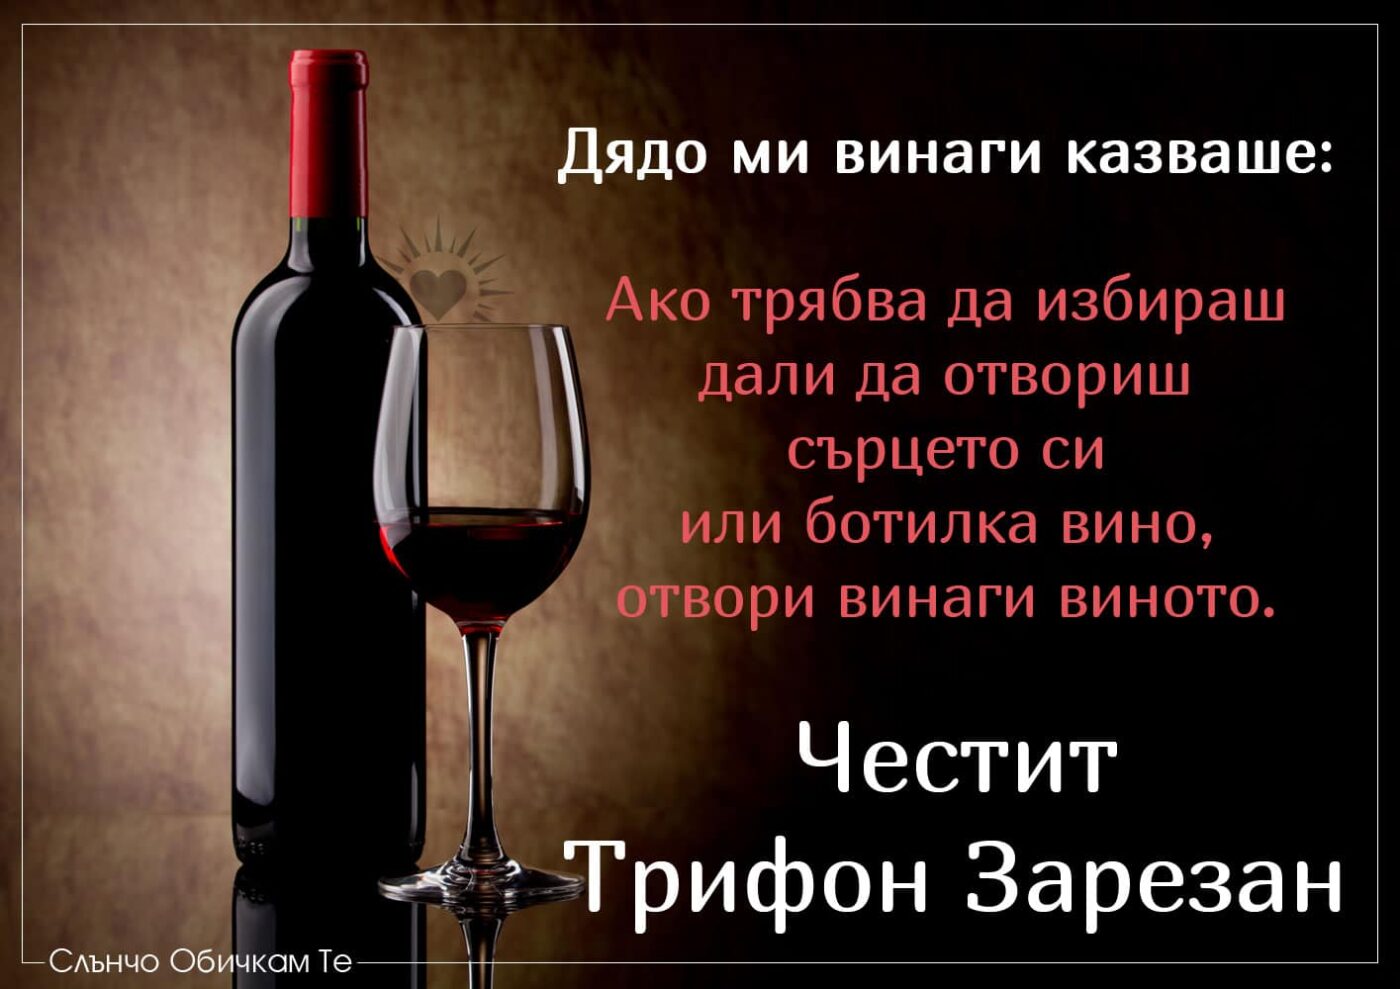 Честит Трифон Зарезан празник на виното - пожелания за Трифон зарезан, 14 февруари, вино и любов